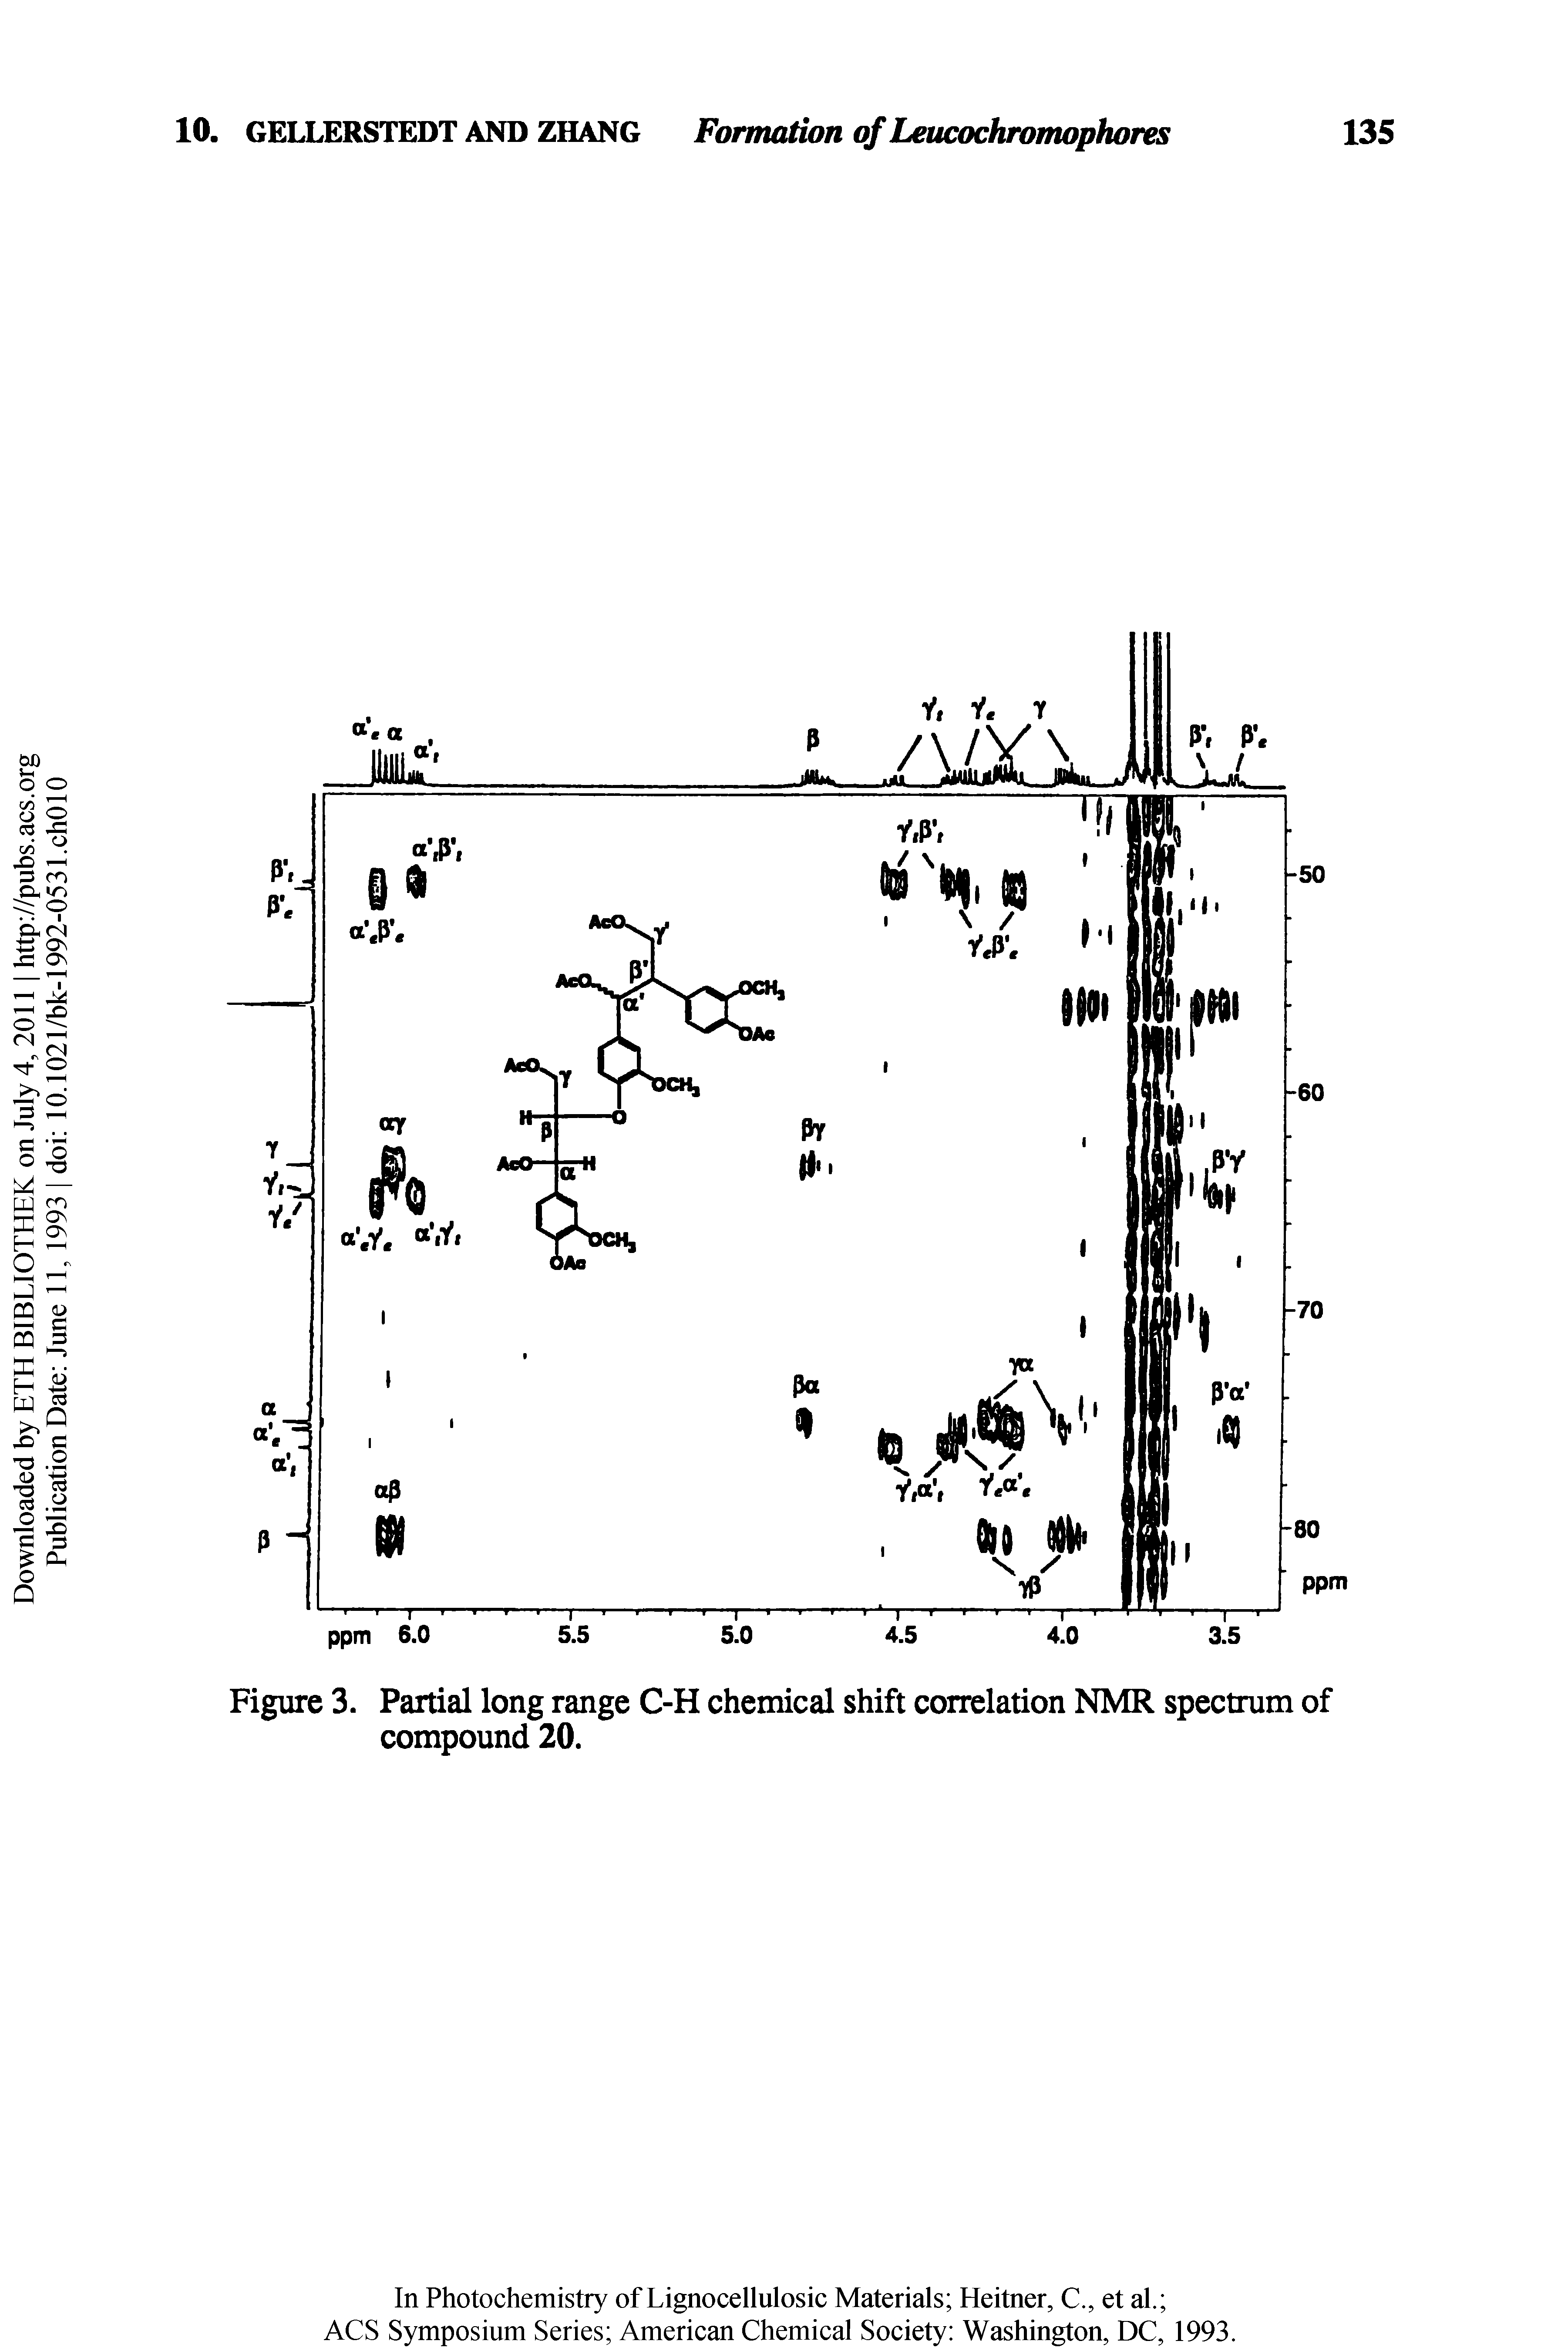 Figure 3. Partial long range C-H chemical shift correlation NMR spectrum of compound 20.